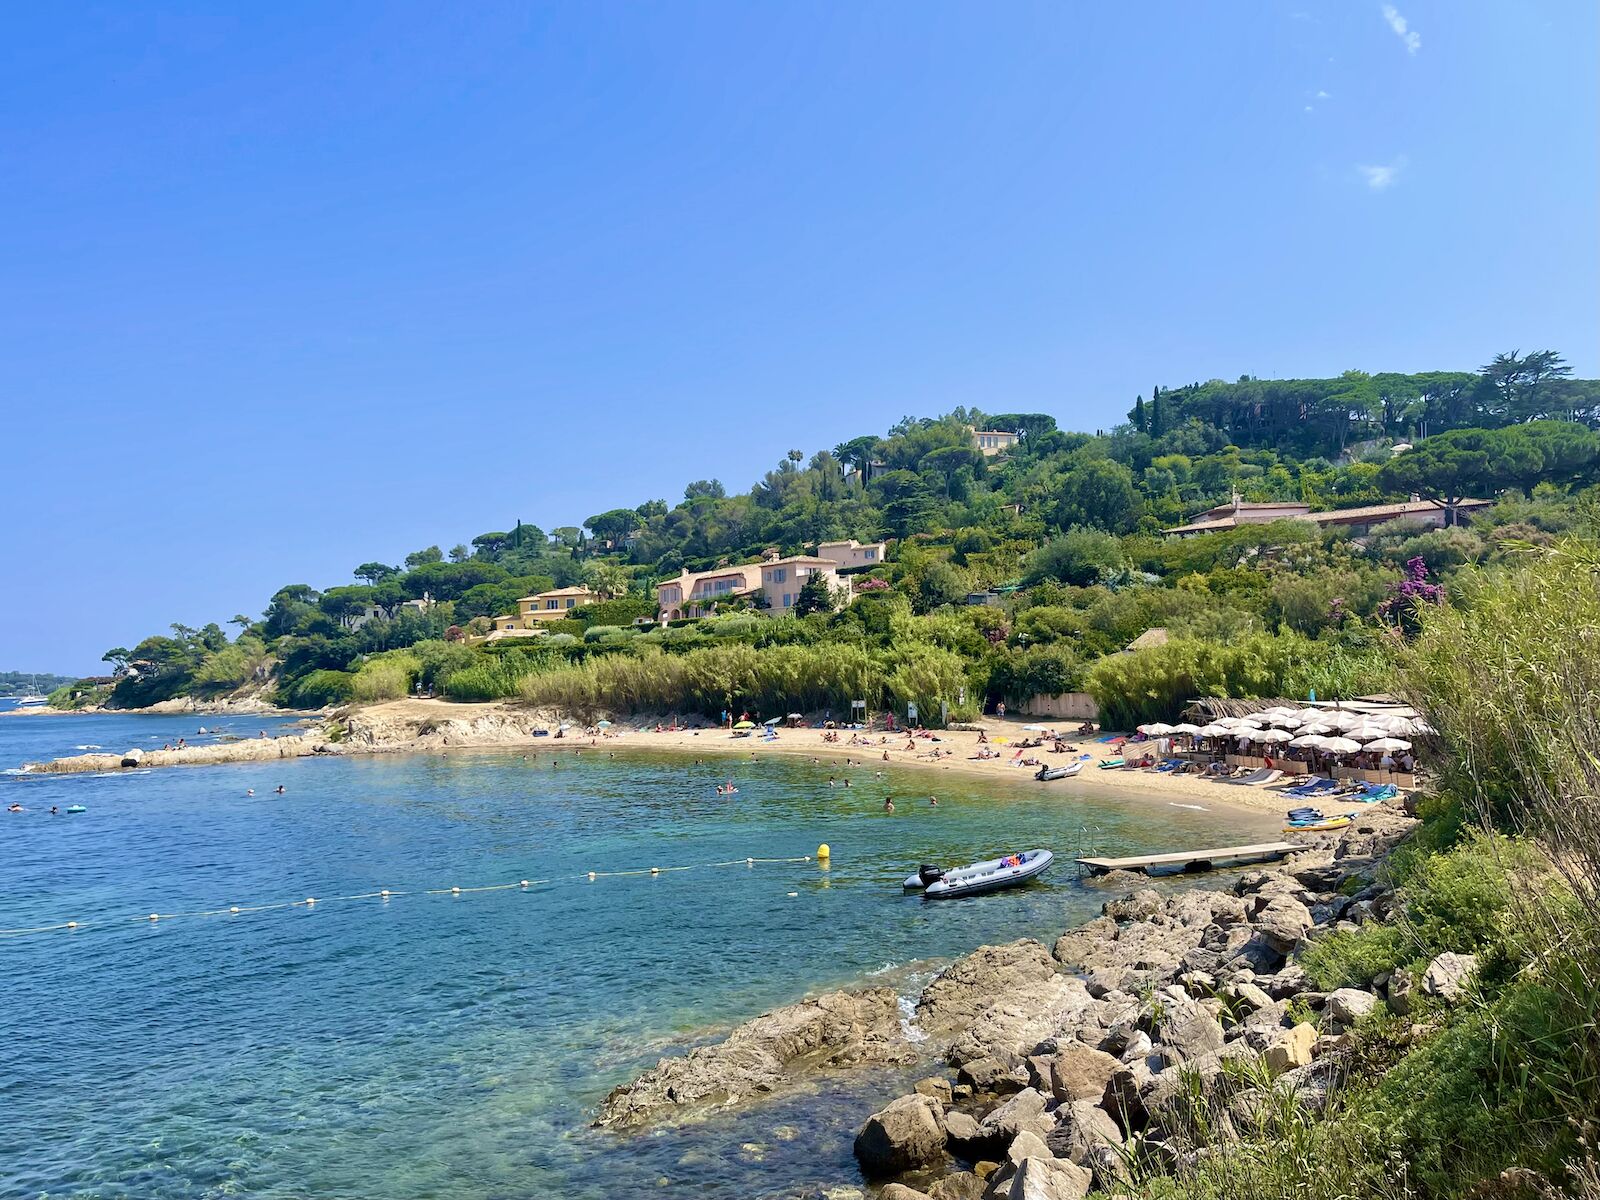 Les Graniers beach and beach club in St. Tropez